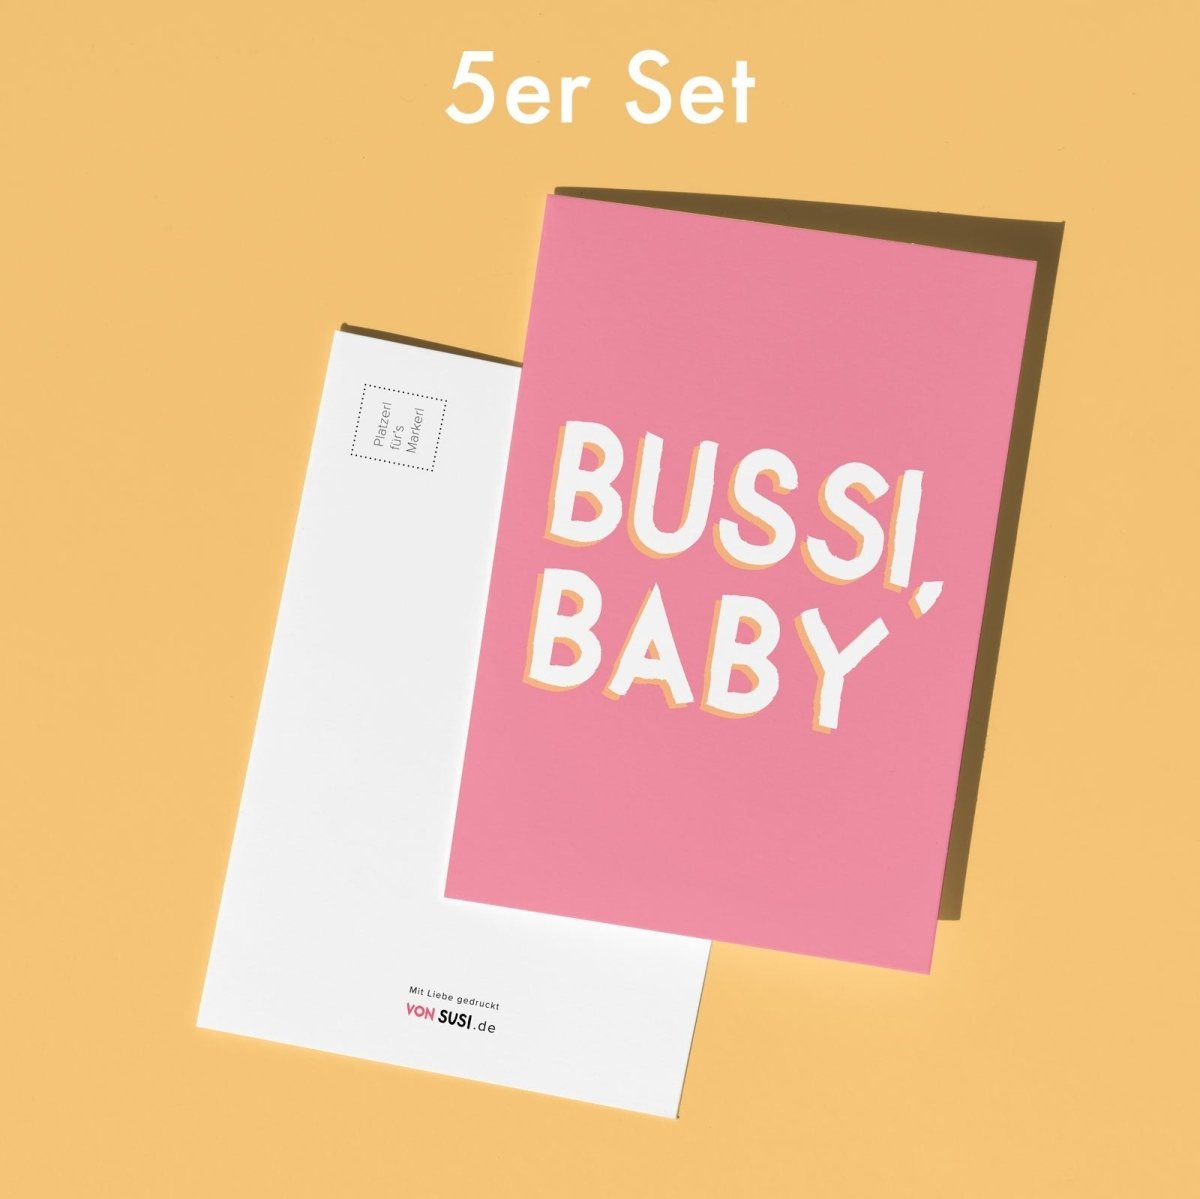 5er Set Bussi, Baby Postkarten • Bussi Postkarten in pink - vonSUSI